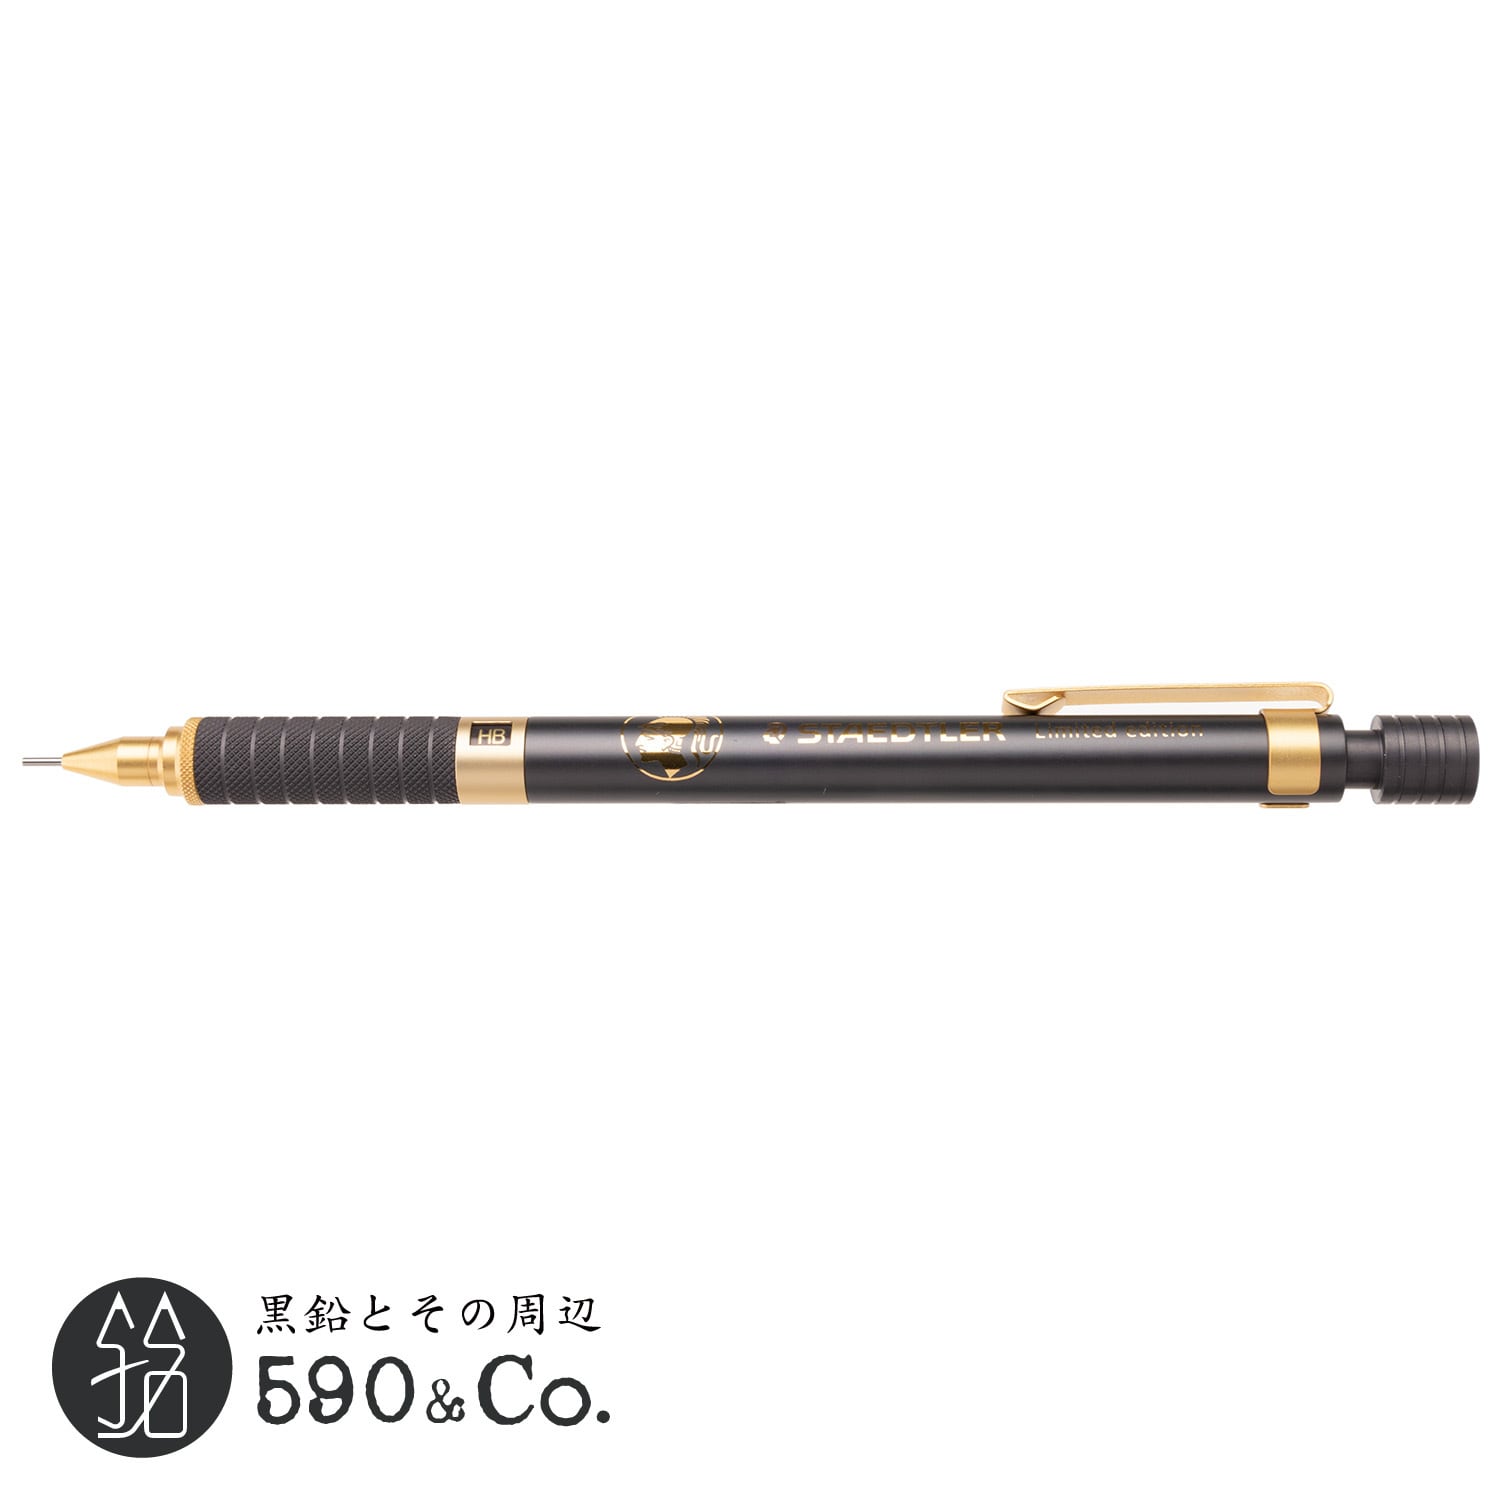 ステッドラー シャーペン 0.5mm 製図用 シャープペン 限定 バーガンディ 925 3505-7